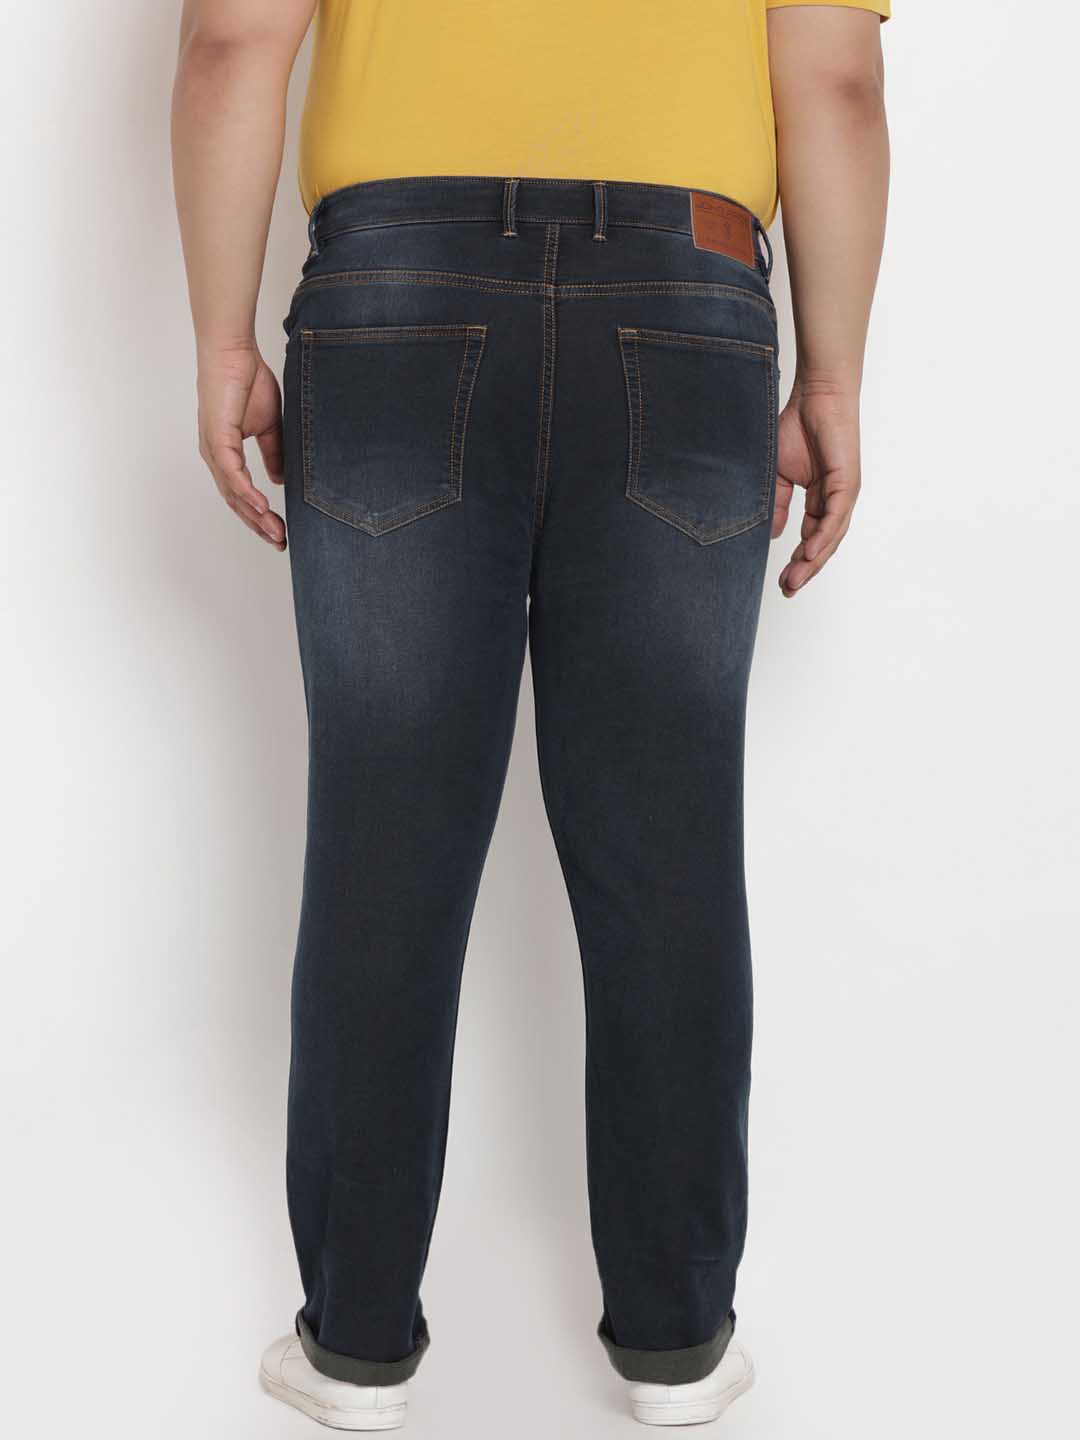 bottomwear/jeans/BEPLJPJ1225/bepljpj1225-4.jpg